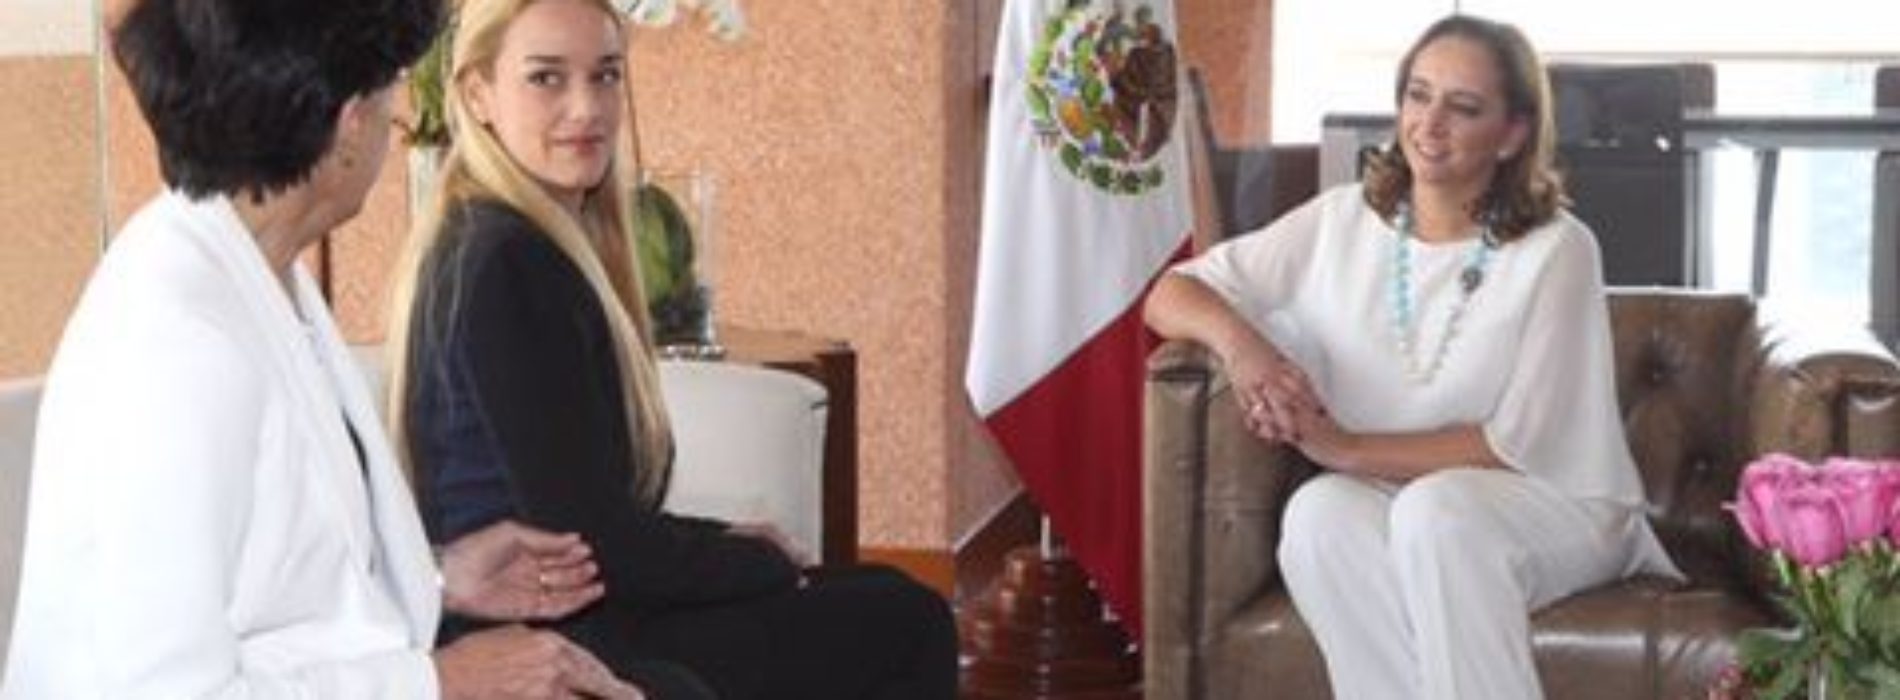 Canciller se reunió con esposa de disidente venezolano